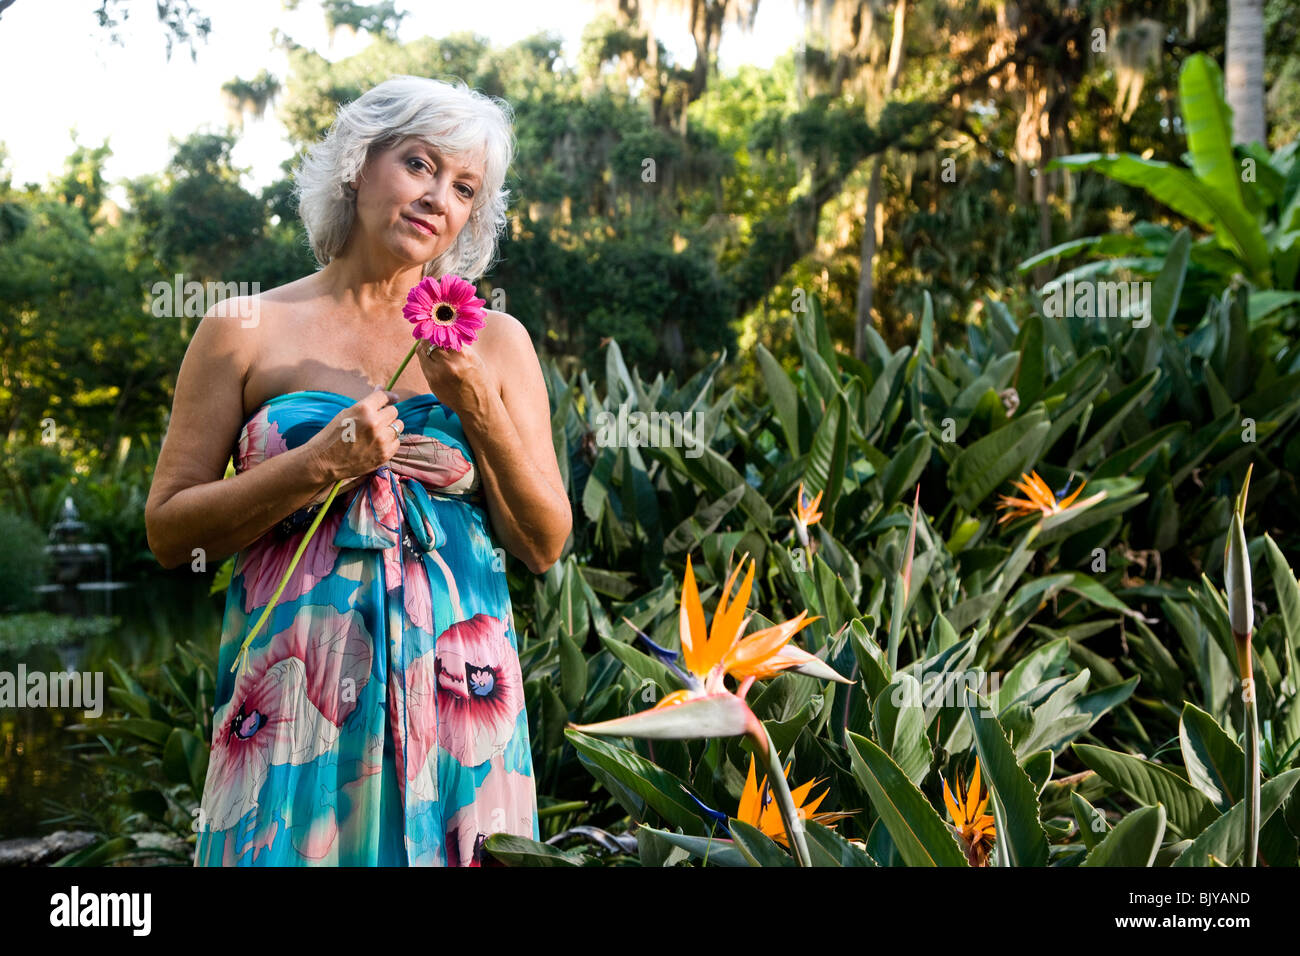 Sexy Reife Frau in einem trägerlosen Kleid Ruf im tropischen Garten  Stockfotografie - Alamy